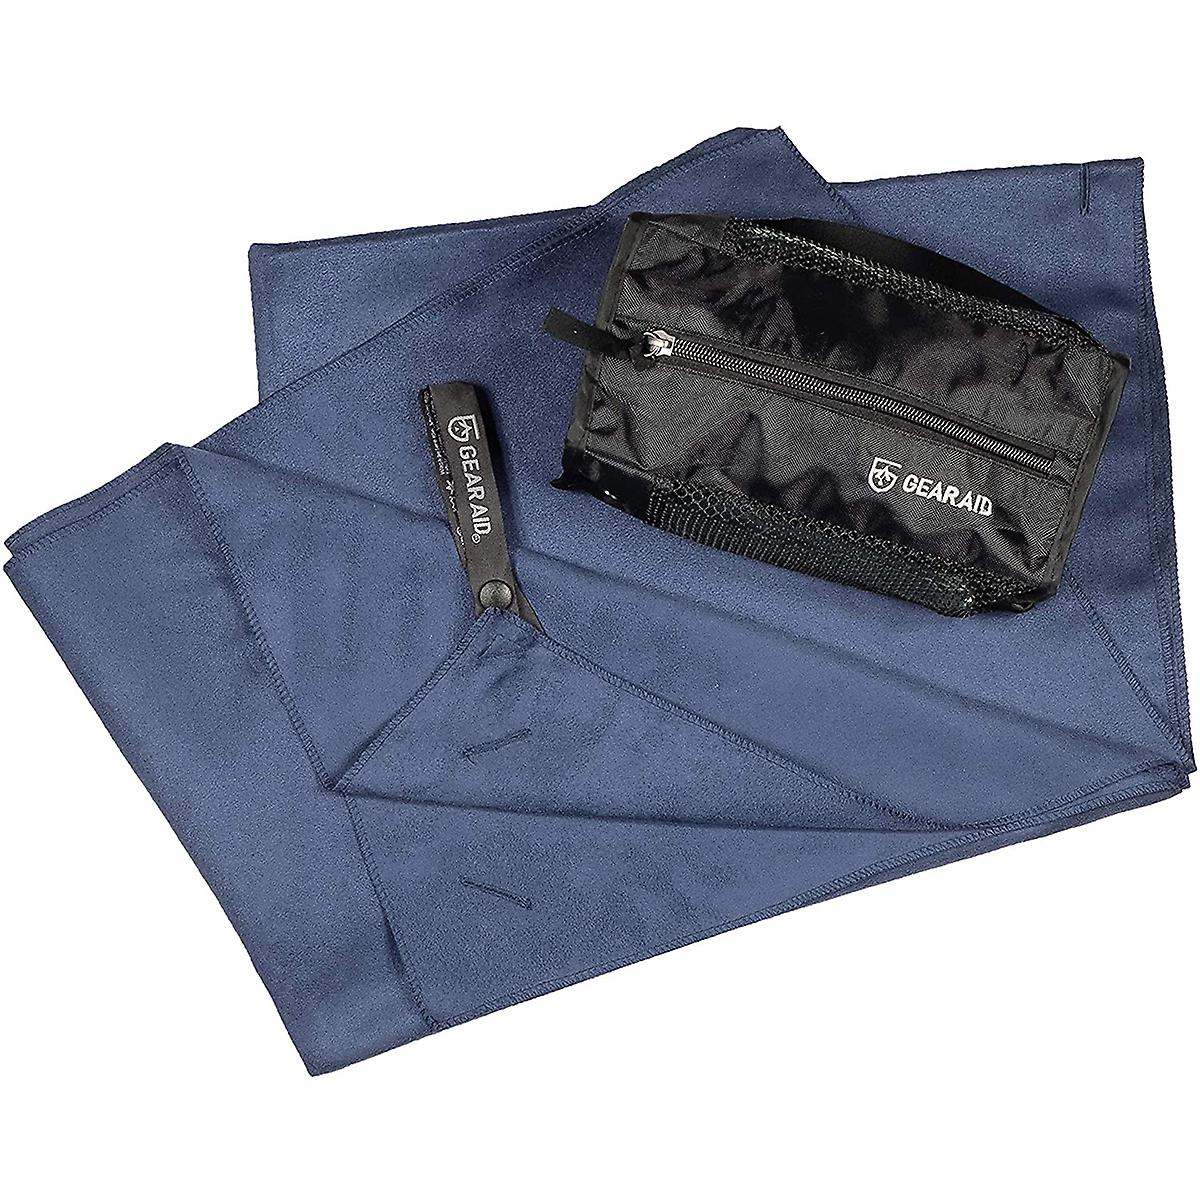 Ayuda de engranajes: toalla de microfibra Navy- xlarge